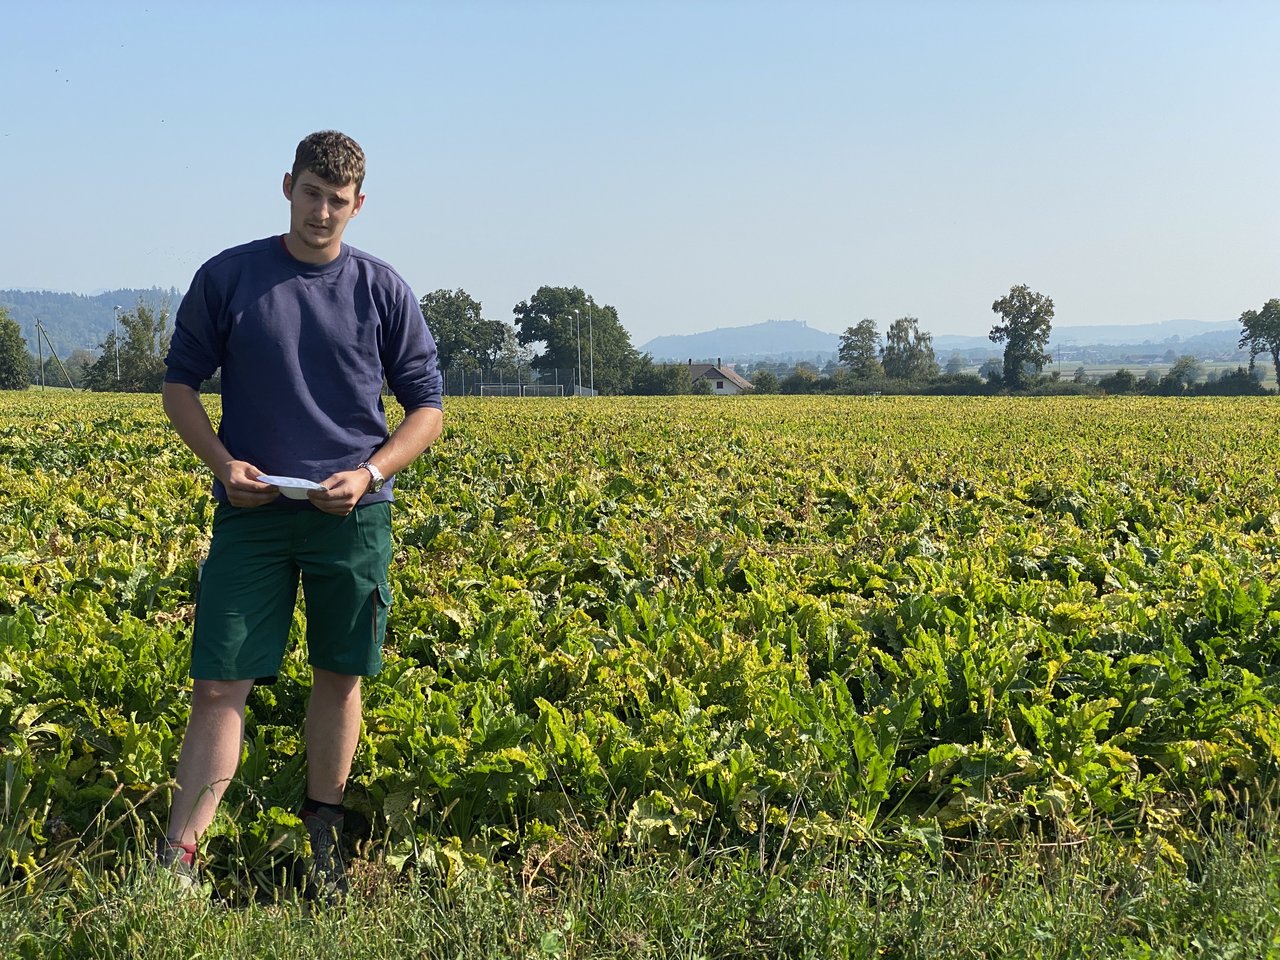 Einer von vielen betroffenen Rübenbauern ist Joël Rösch, der seine Felder nicht vor der Blattlaus, dem Überträger des Virus, schützen konnte.